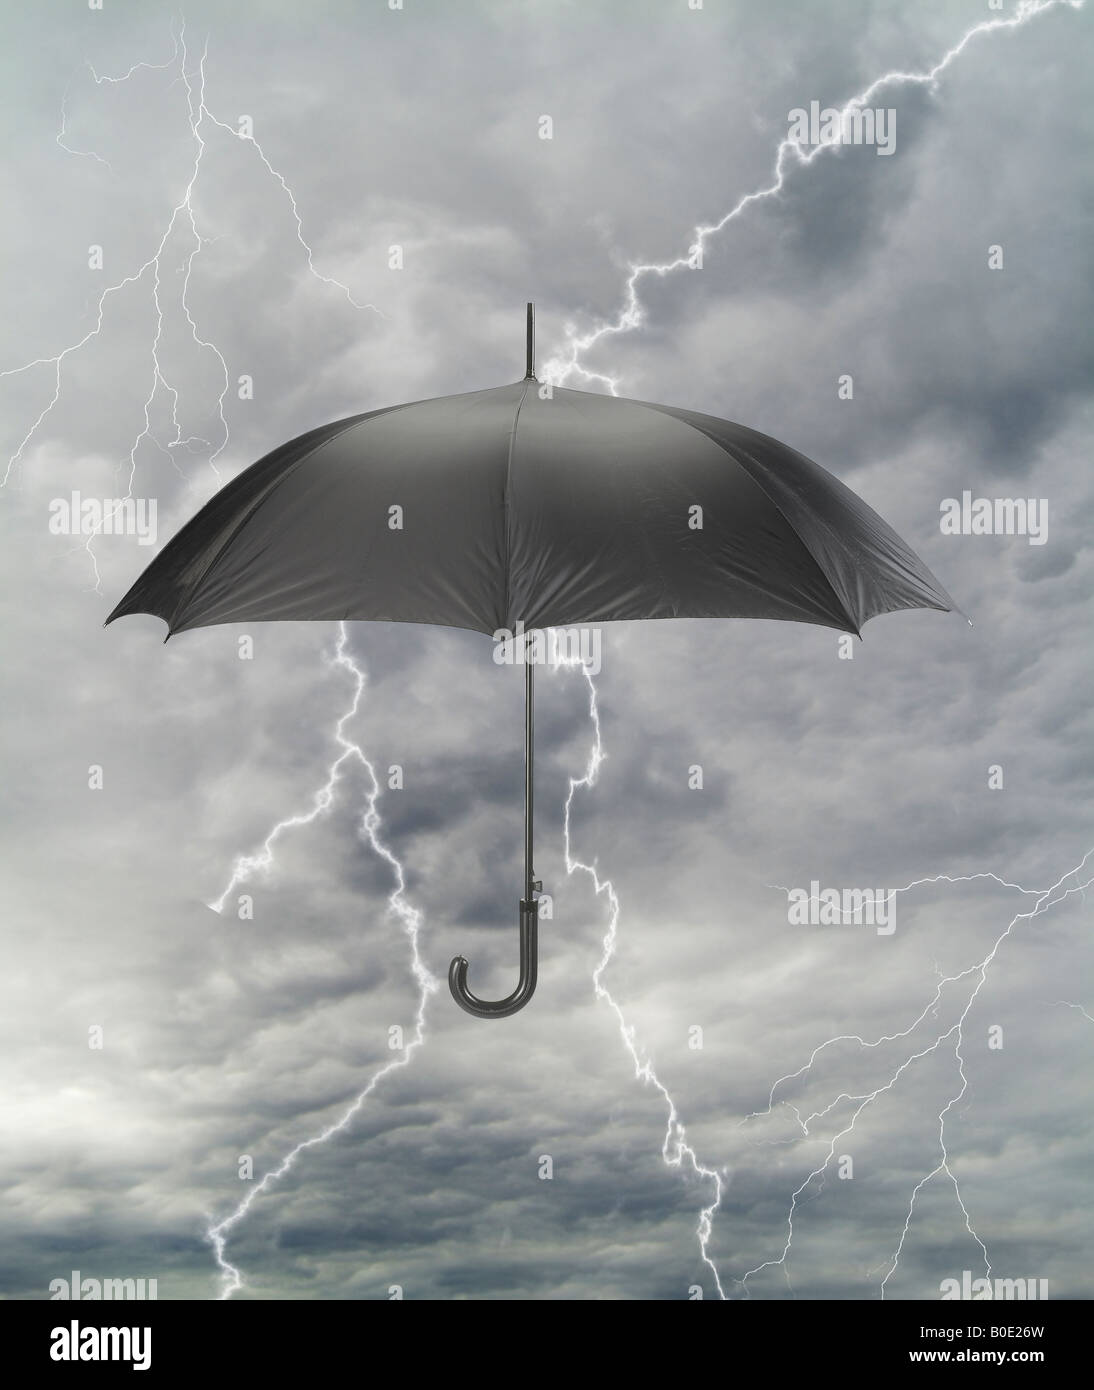 Schwarzen Regenschirm im Gewitter Regen dunkle Gewitterwolken mit Blitz Stockfoto